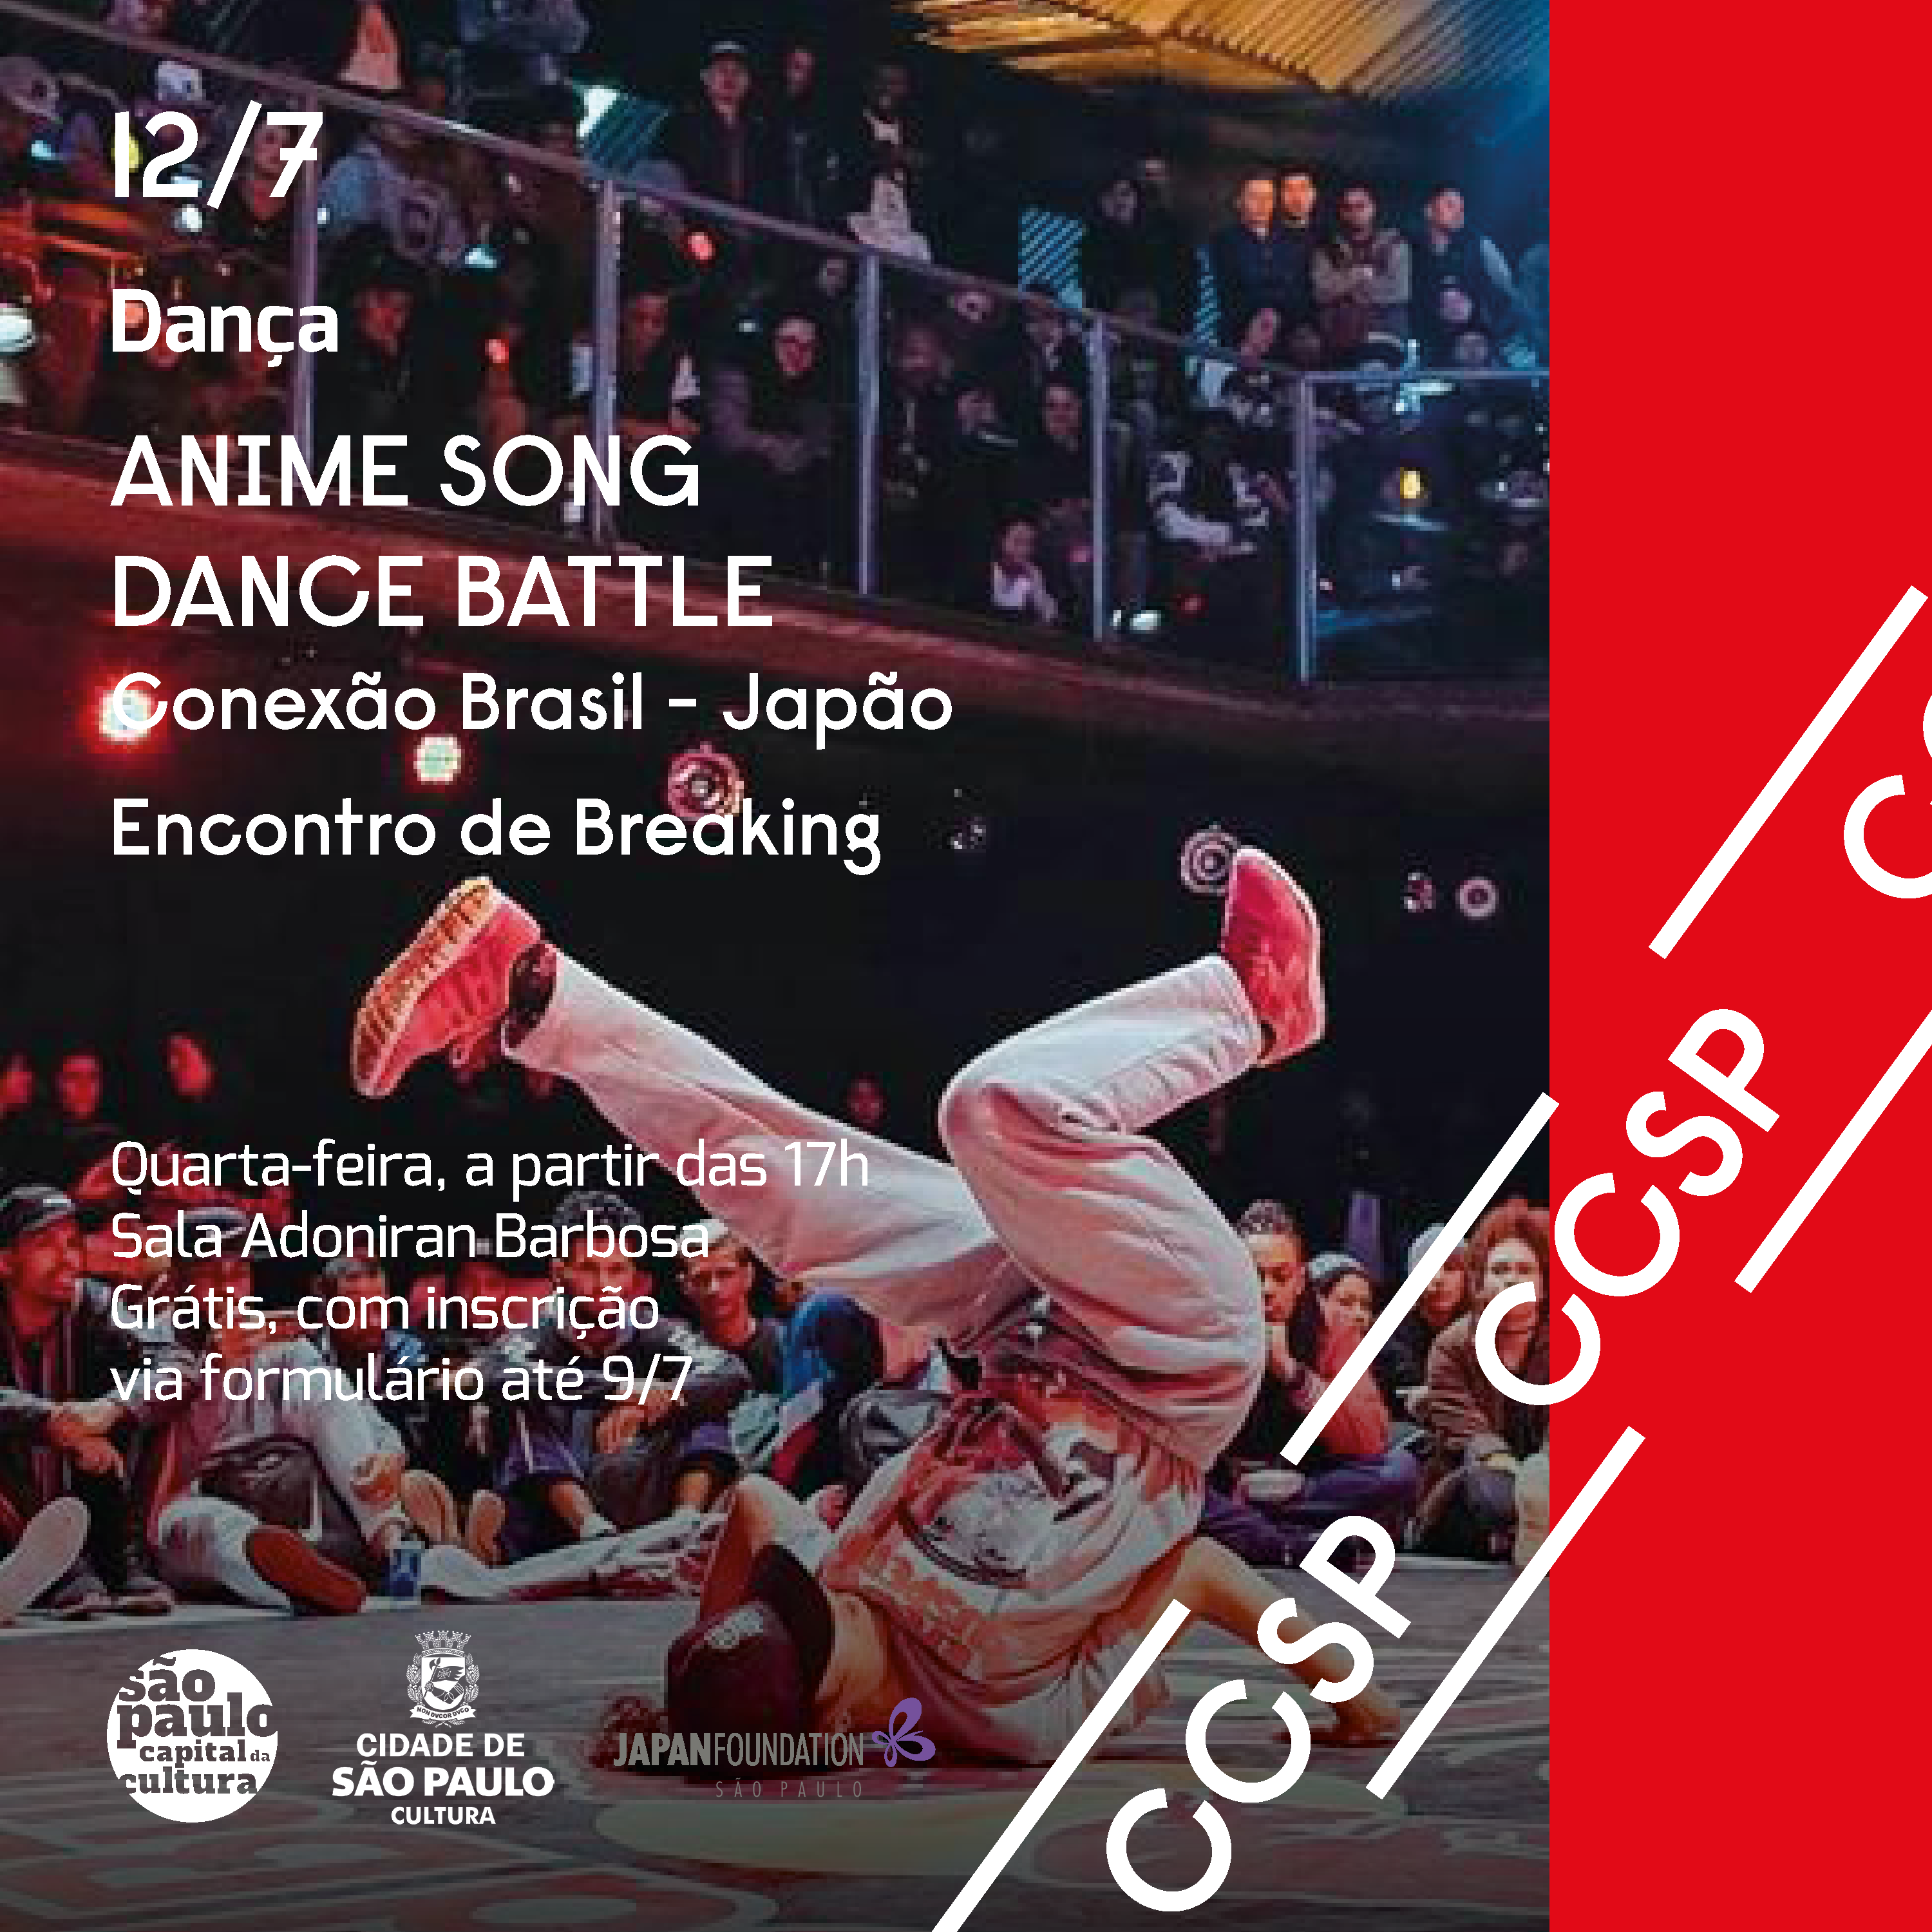 Anime Song Dance Brasil  Fundação Japão em São Paulo